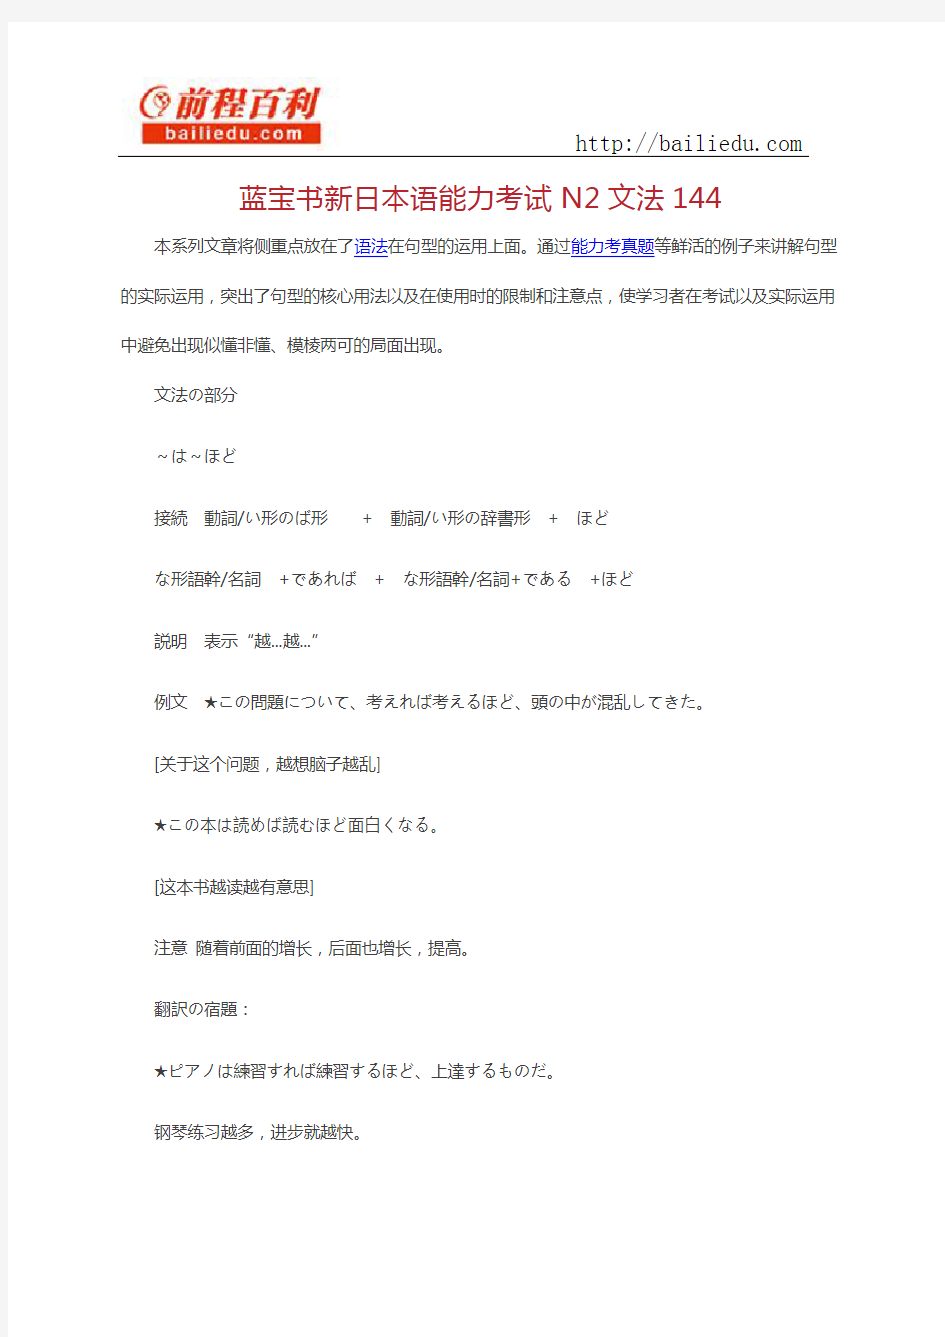 蓝宝书新日本语能力考试N2文法144